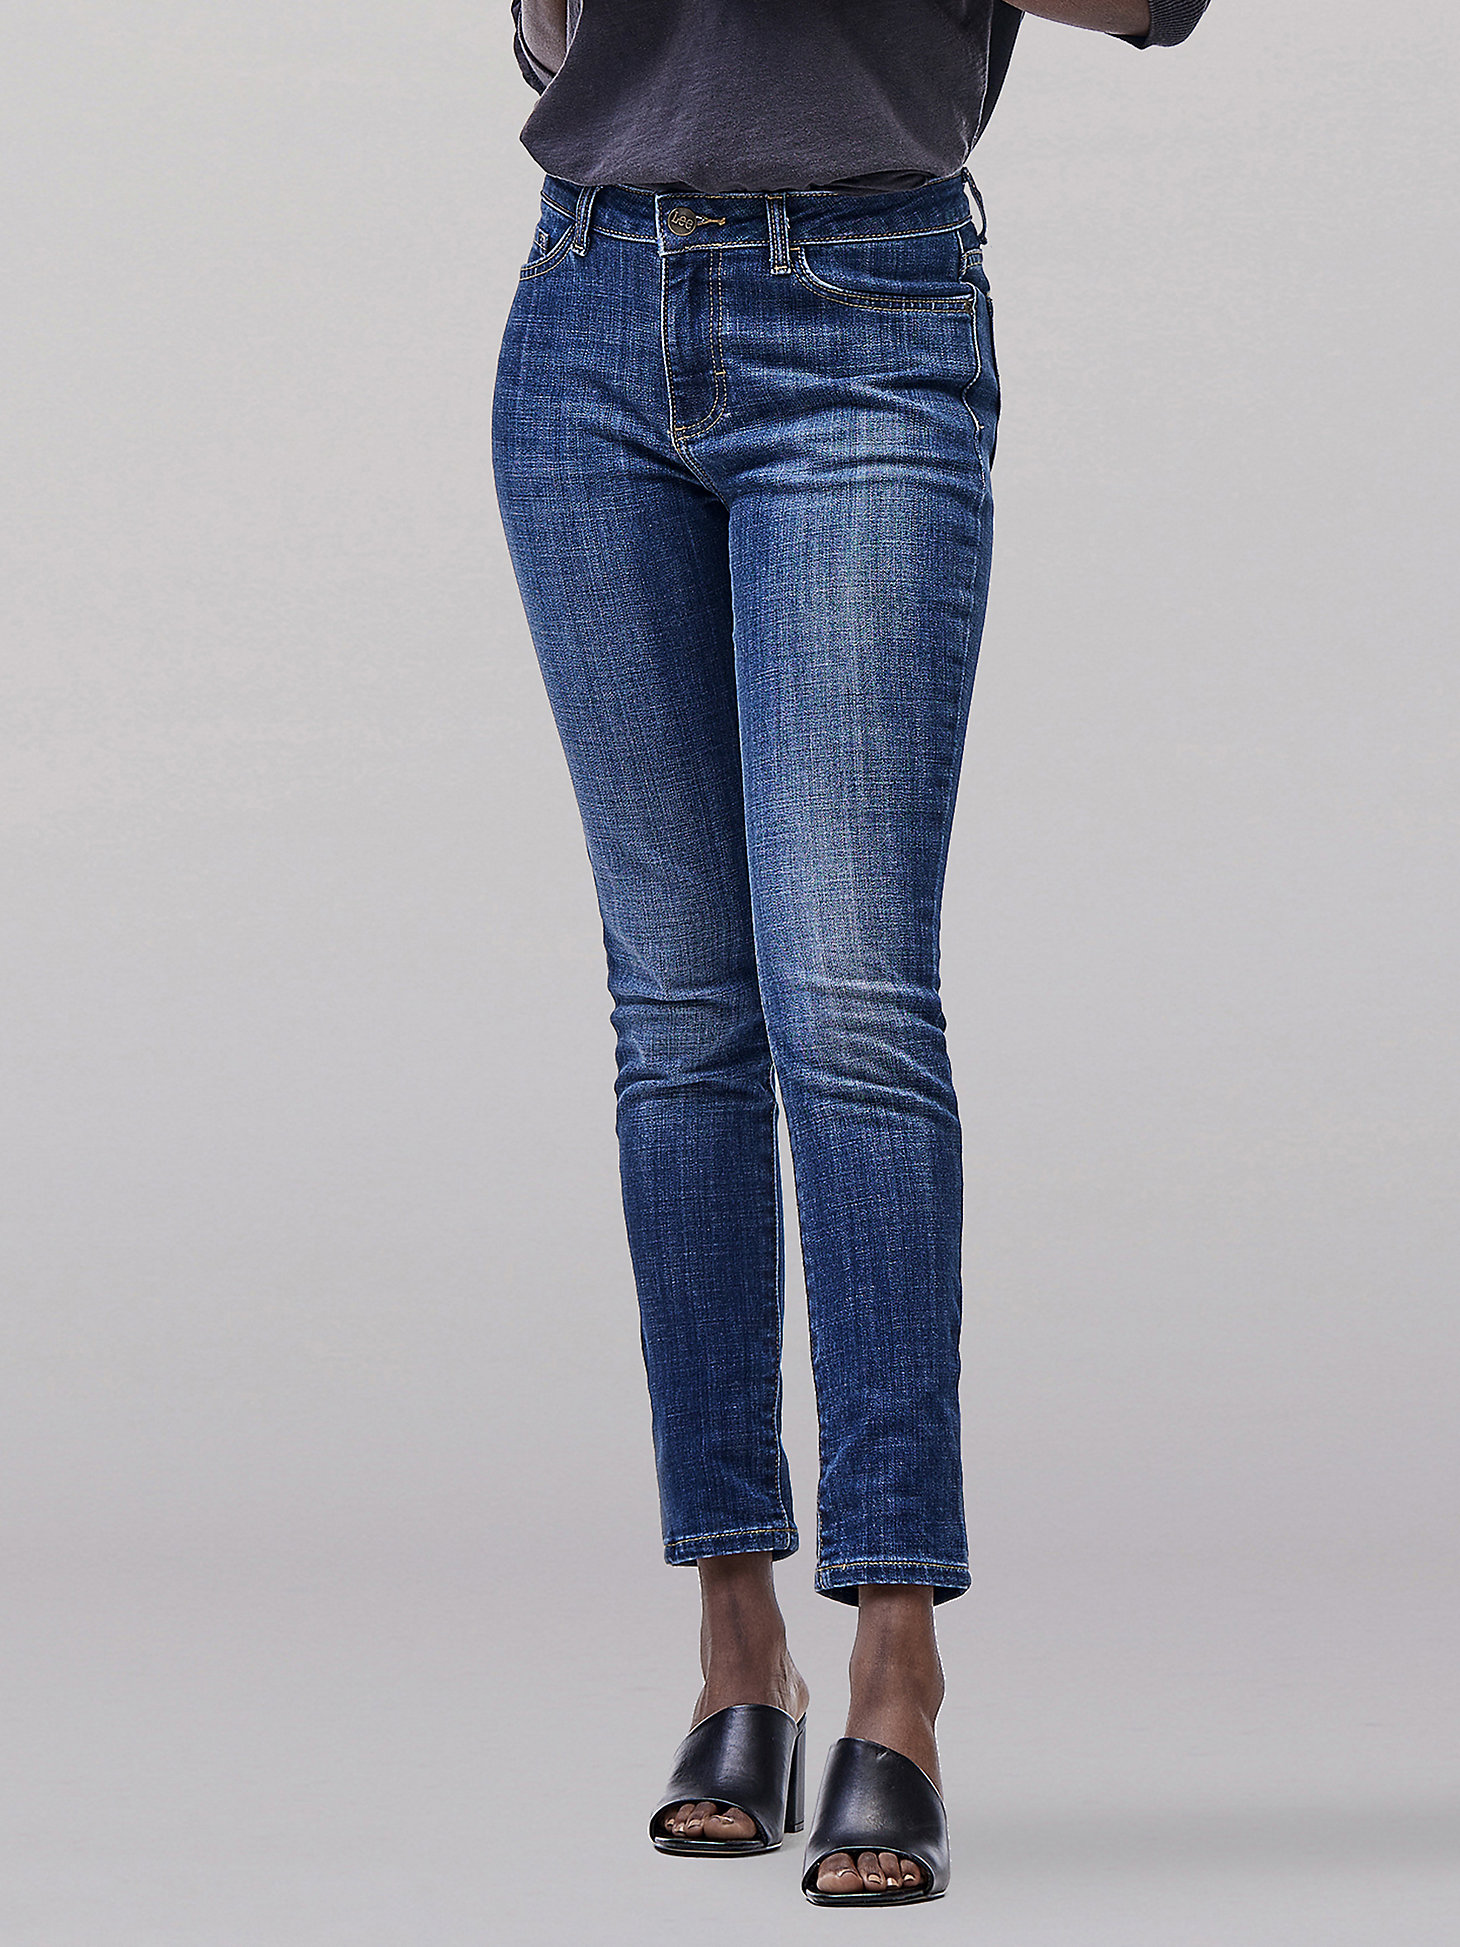 Portrait barely Artificial Women's Legendary Slim Fit Skinny Jean